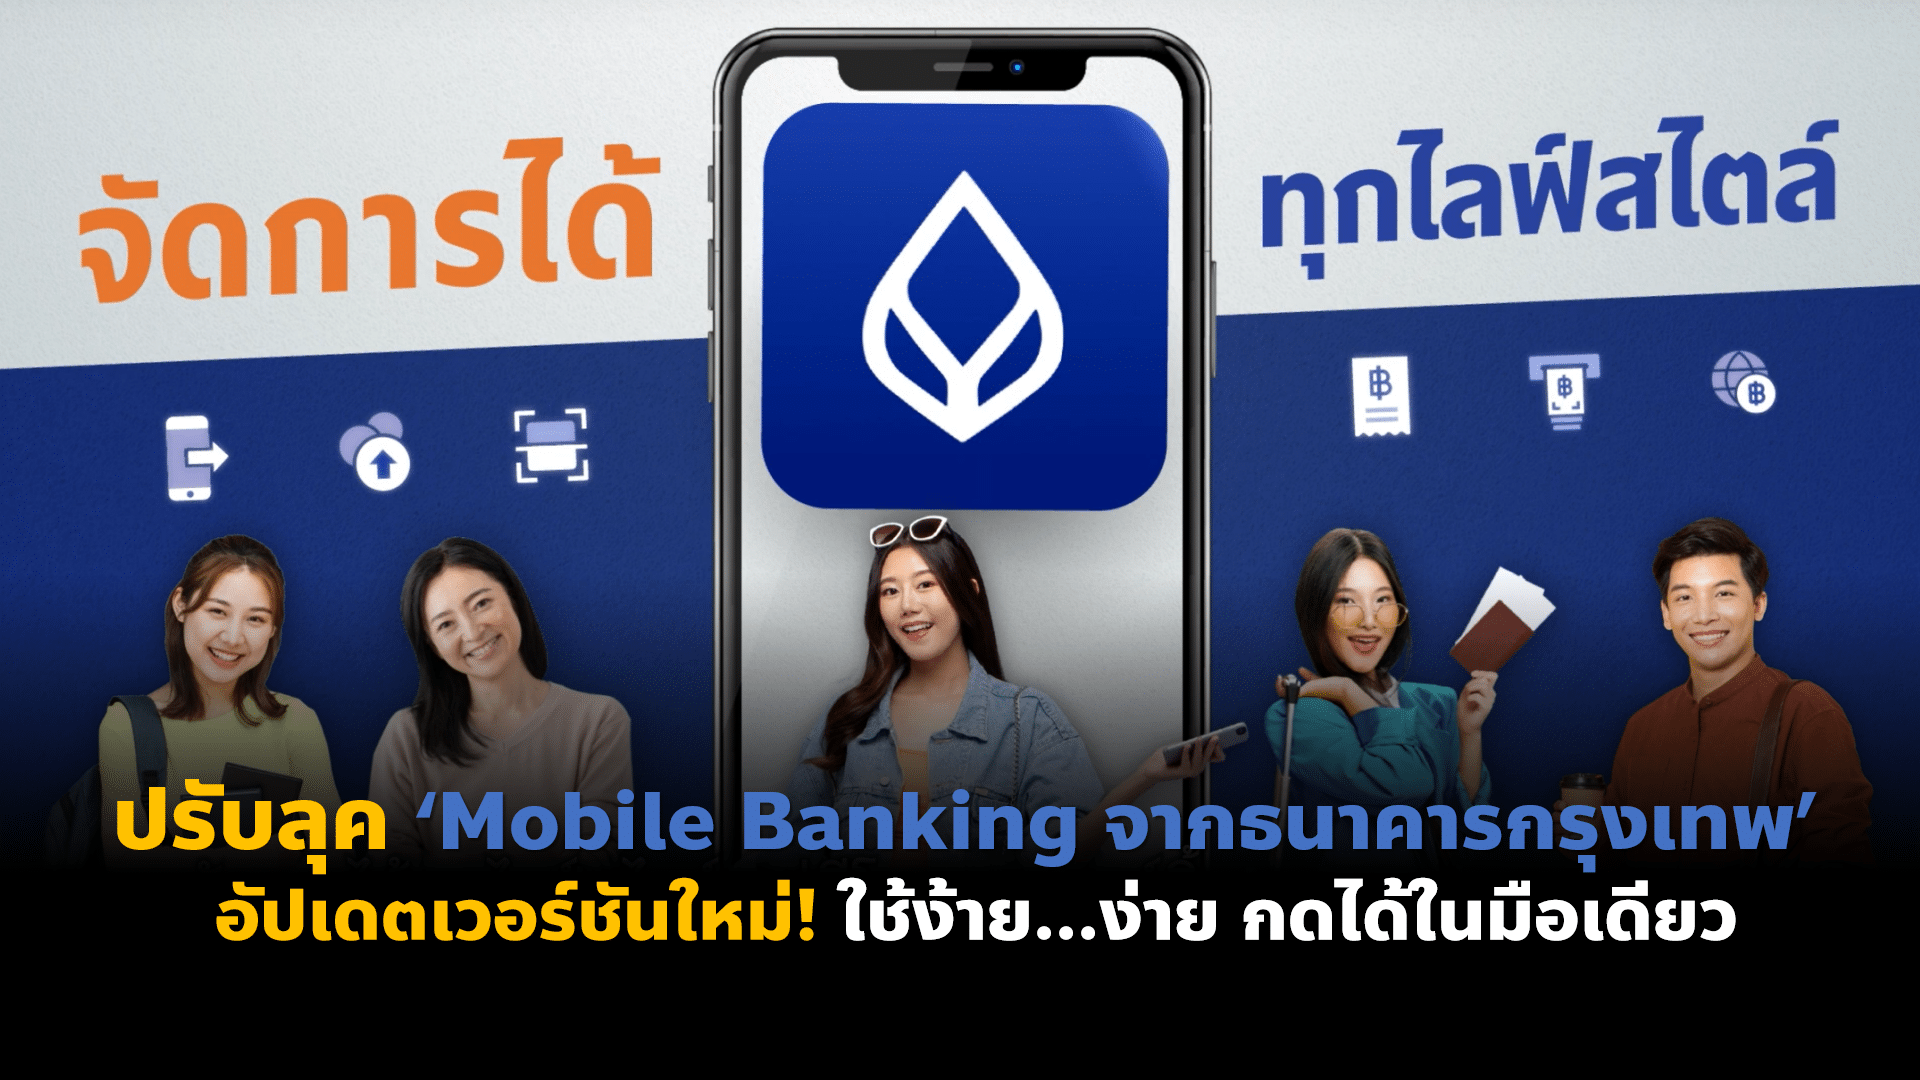 ปรับลุค ‘Mobile Banking จาก ธนาคารกรุงเทพ’ อัปเดตเวอร์ชันใหม่! ใช้ง้าย…ง่าย กดได้ในมือเดียว